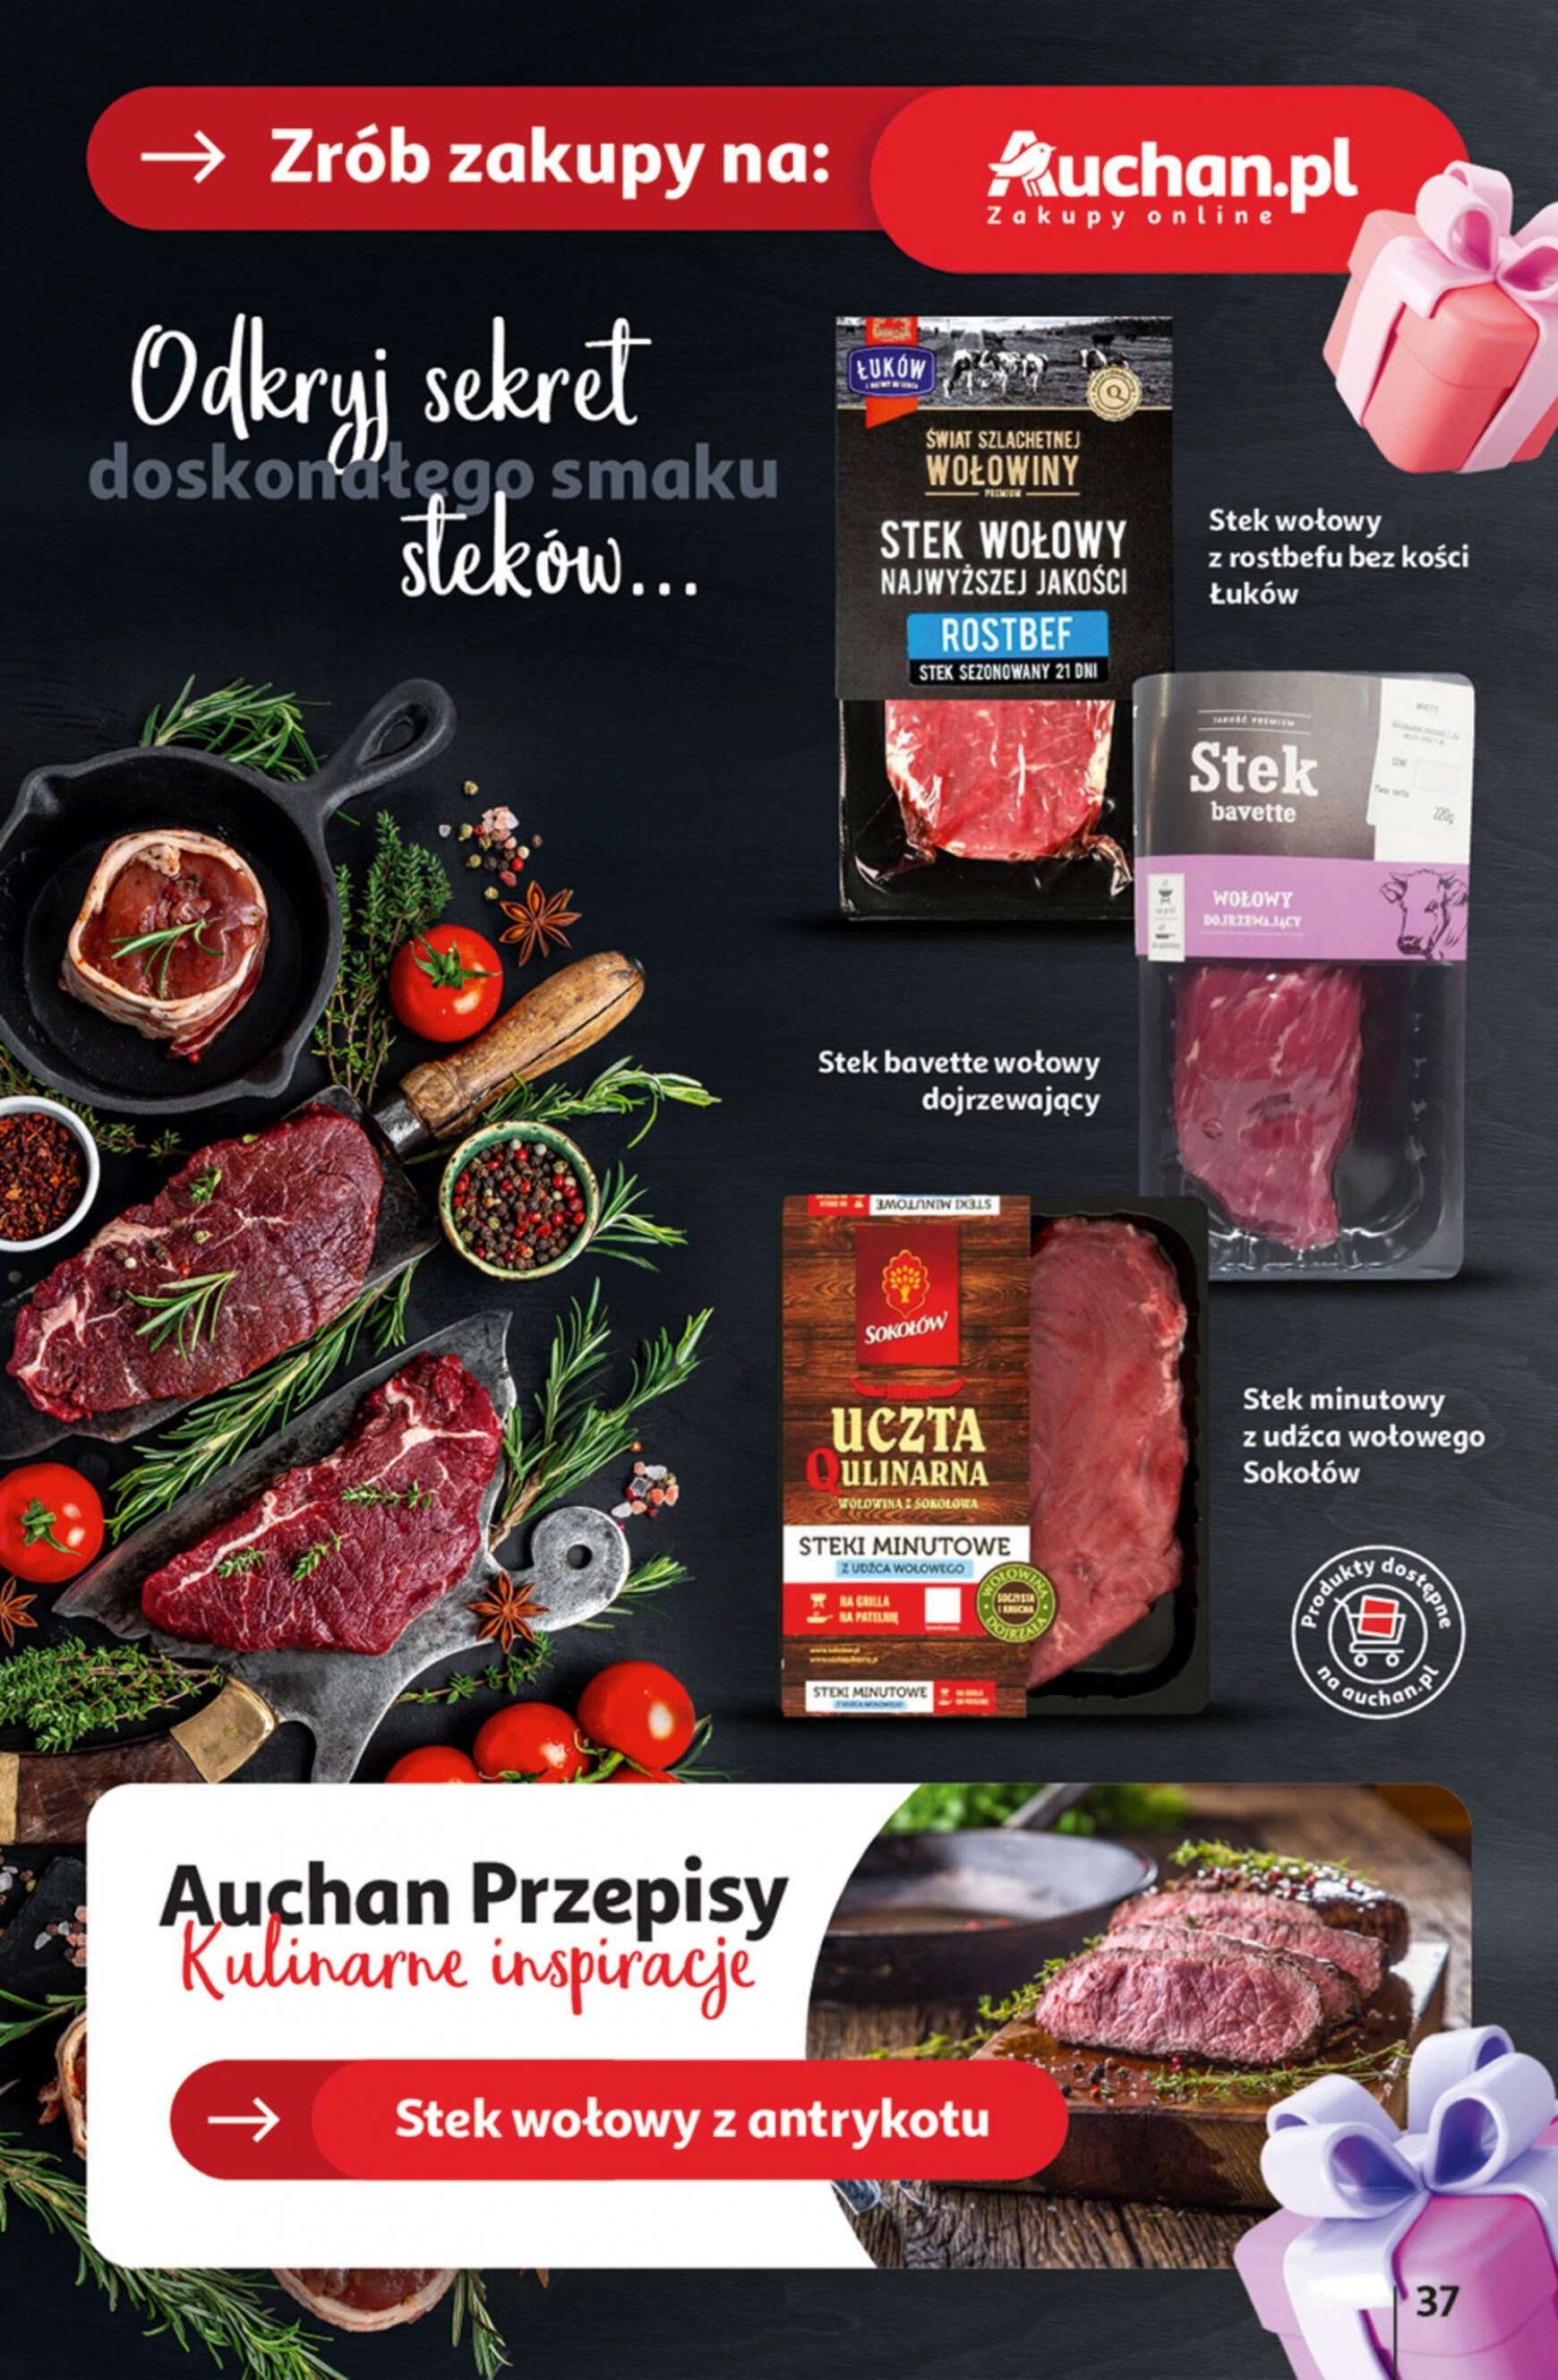 auchan - Hipermarket Auchan - Gazetka Jeszcze taniej na urodziny gazetka aktualna ważna od 02.05. - 08.05. - page: 37